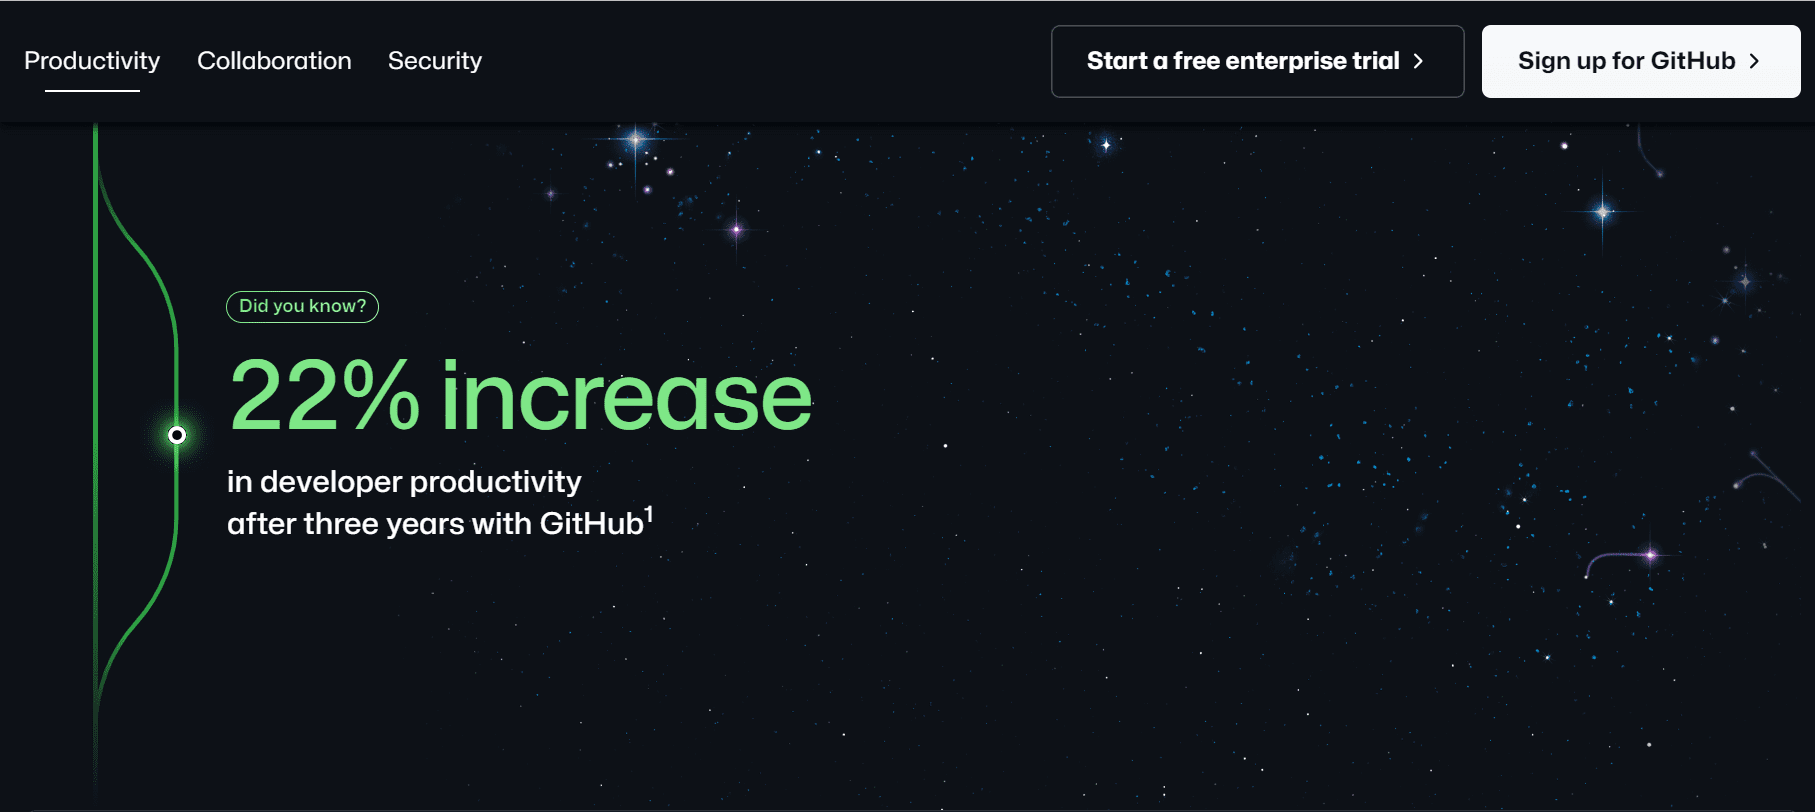 Eine Infoseite von GitHub. Im Hintergrund sind Sterne, das Design ist sehr dunkel und futuristisch.